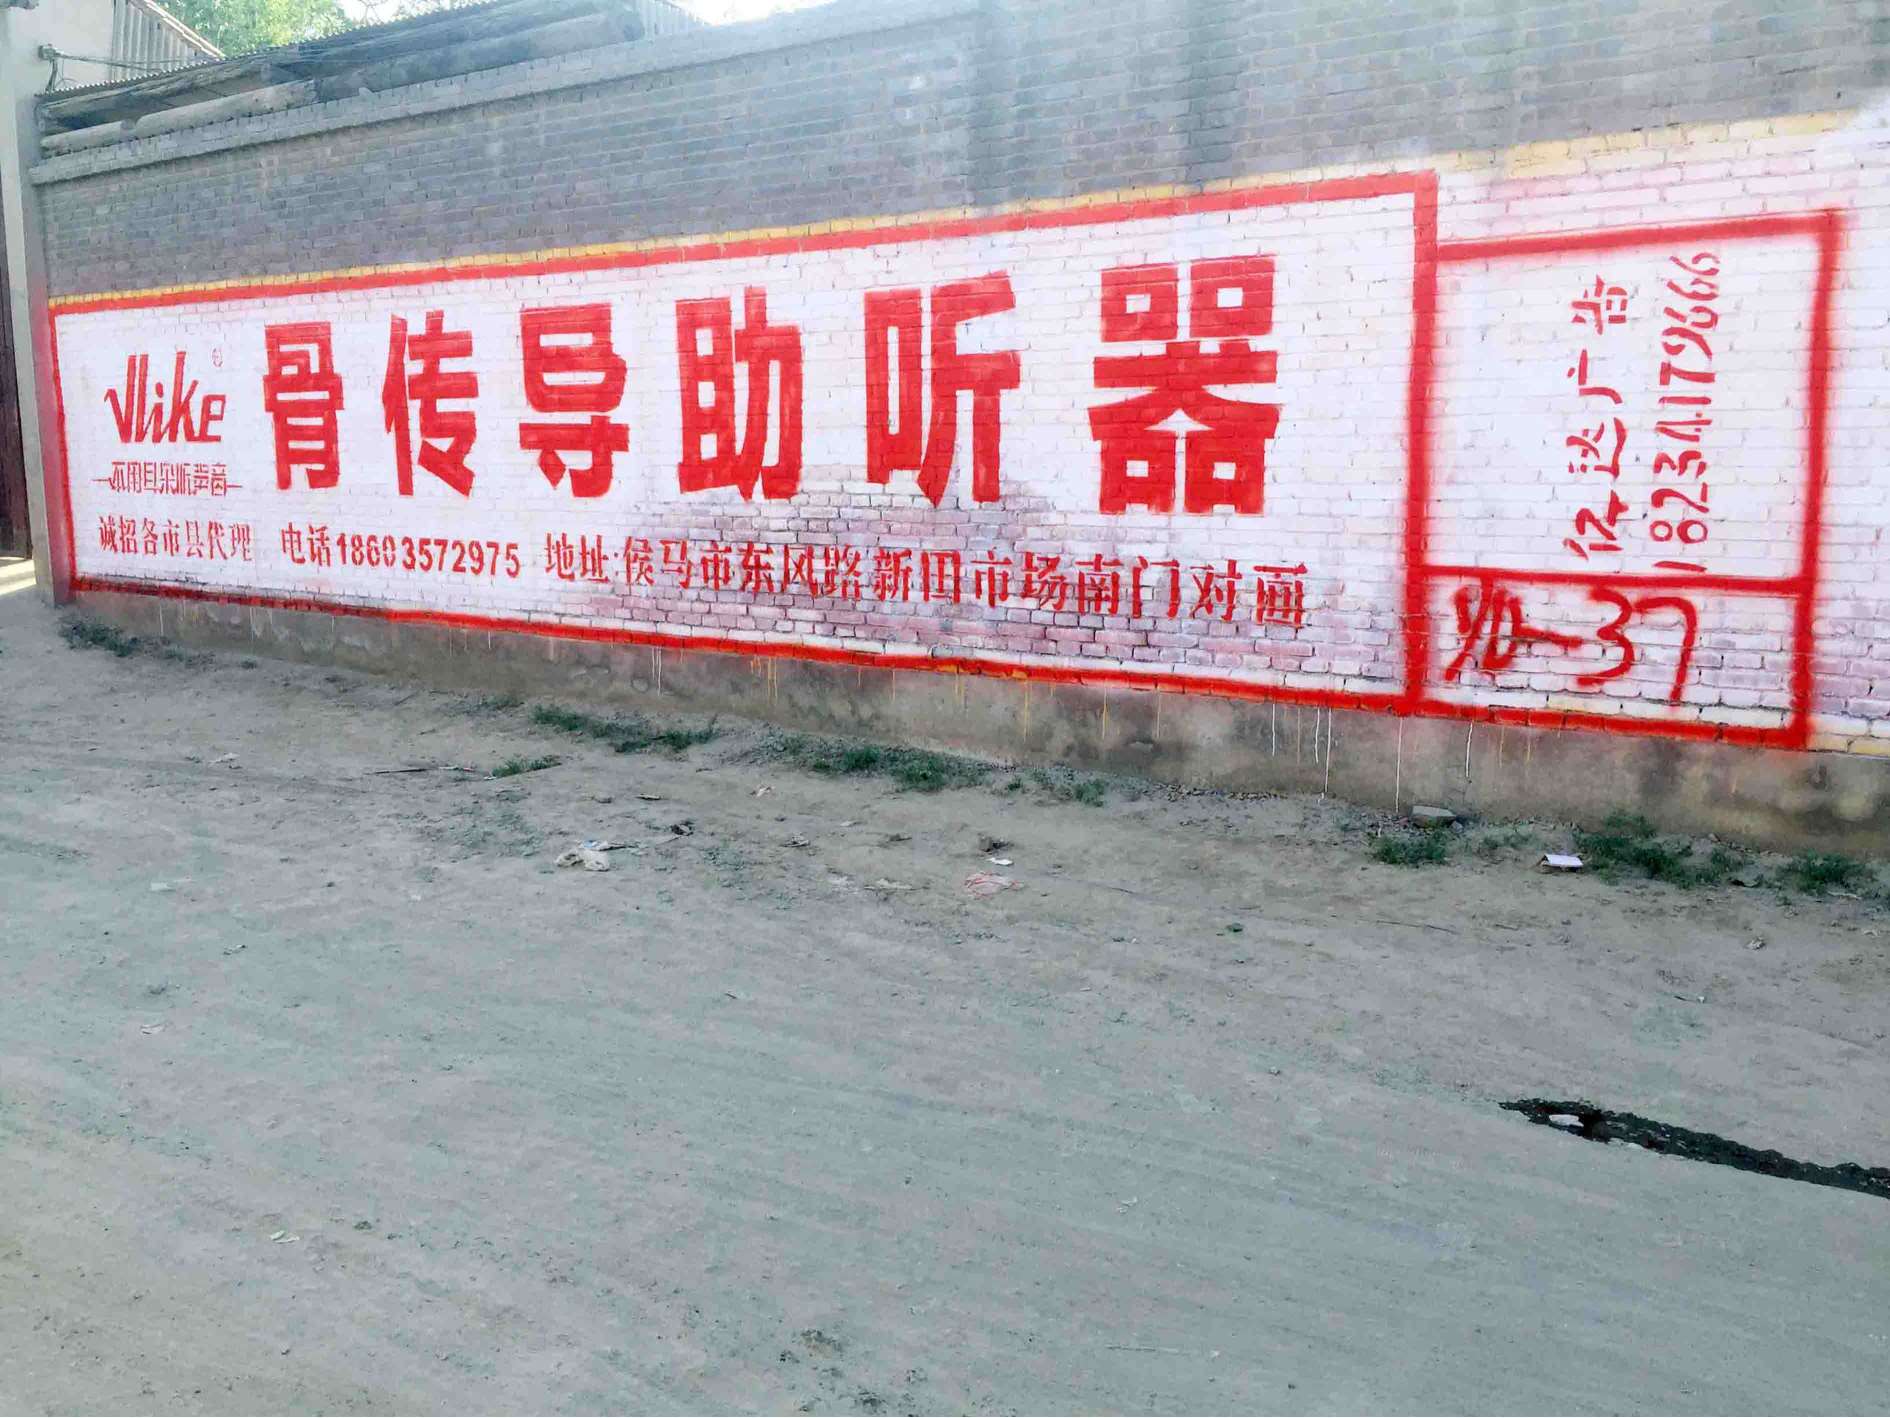 晋中汽车下乡刷墙广告偶遇晋城汽车汽车手绘墙体广告